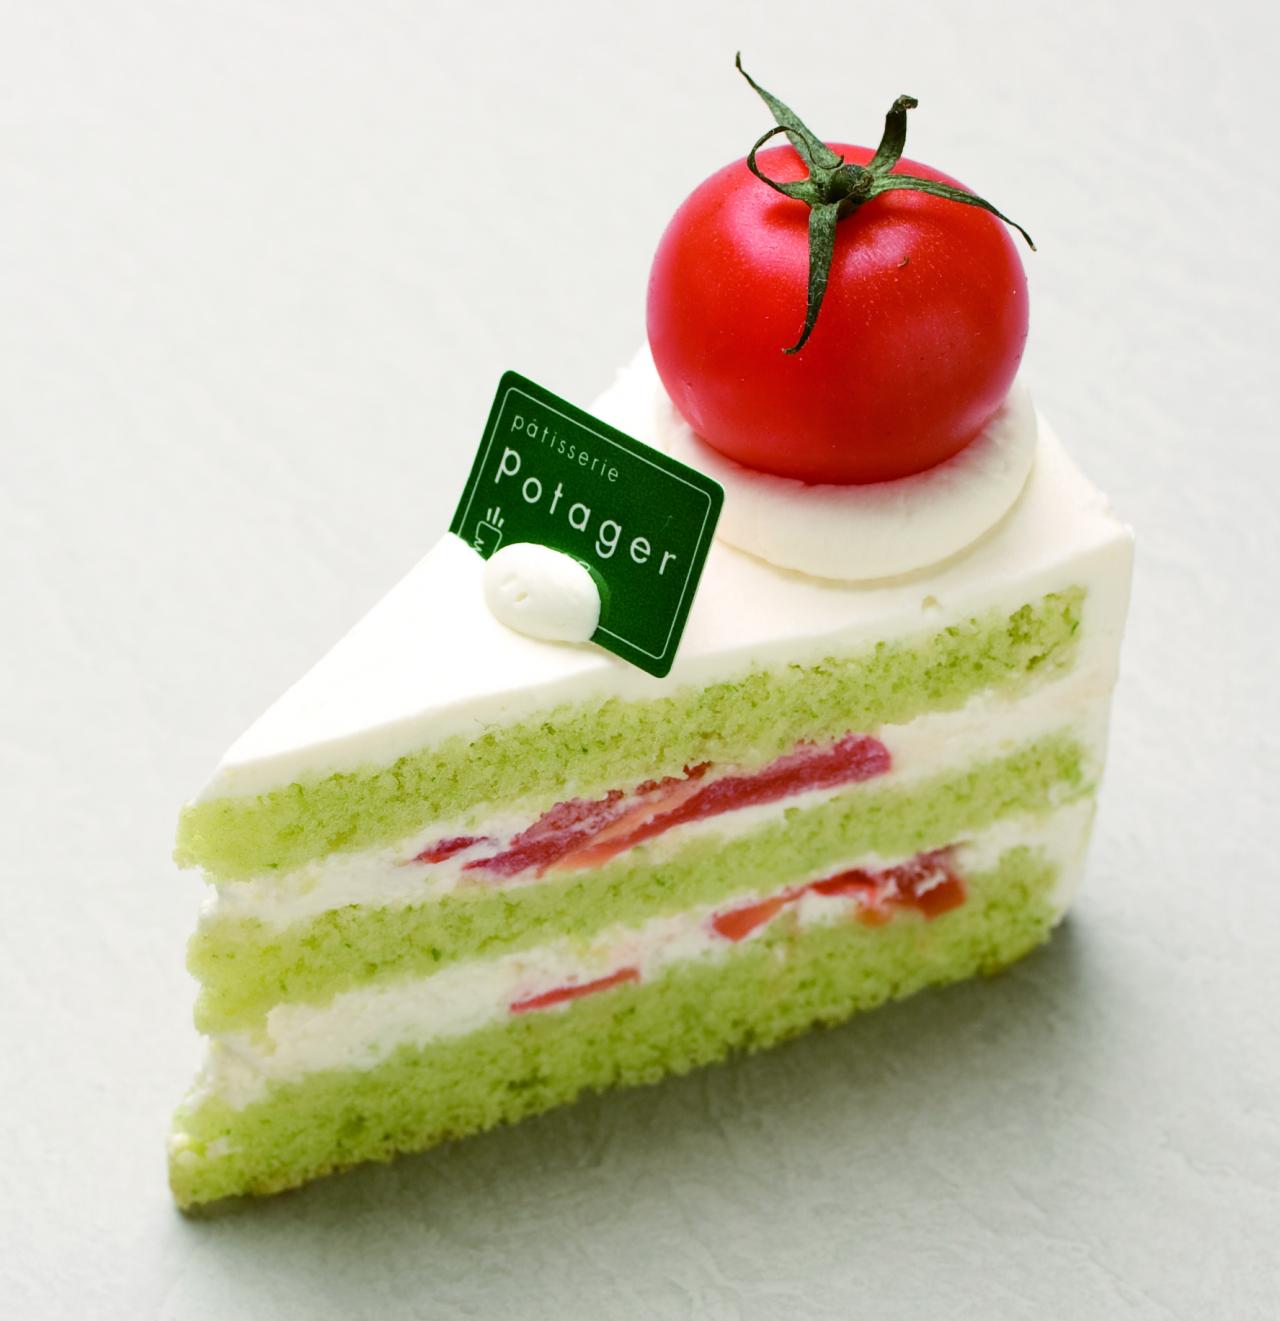 “夹番茄绿色海绵蛋糕（Green Short Tomato）”。掺有小松菜的海绵蛋糕中夹着番茄（Patisserie Potager）